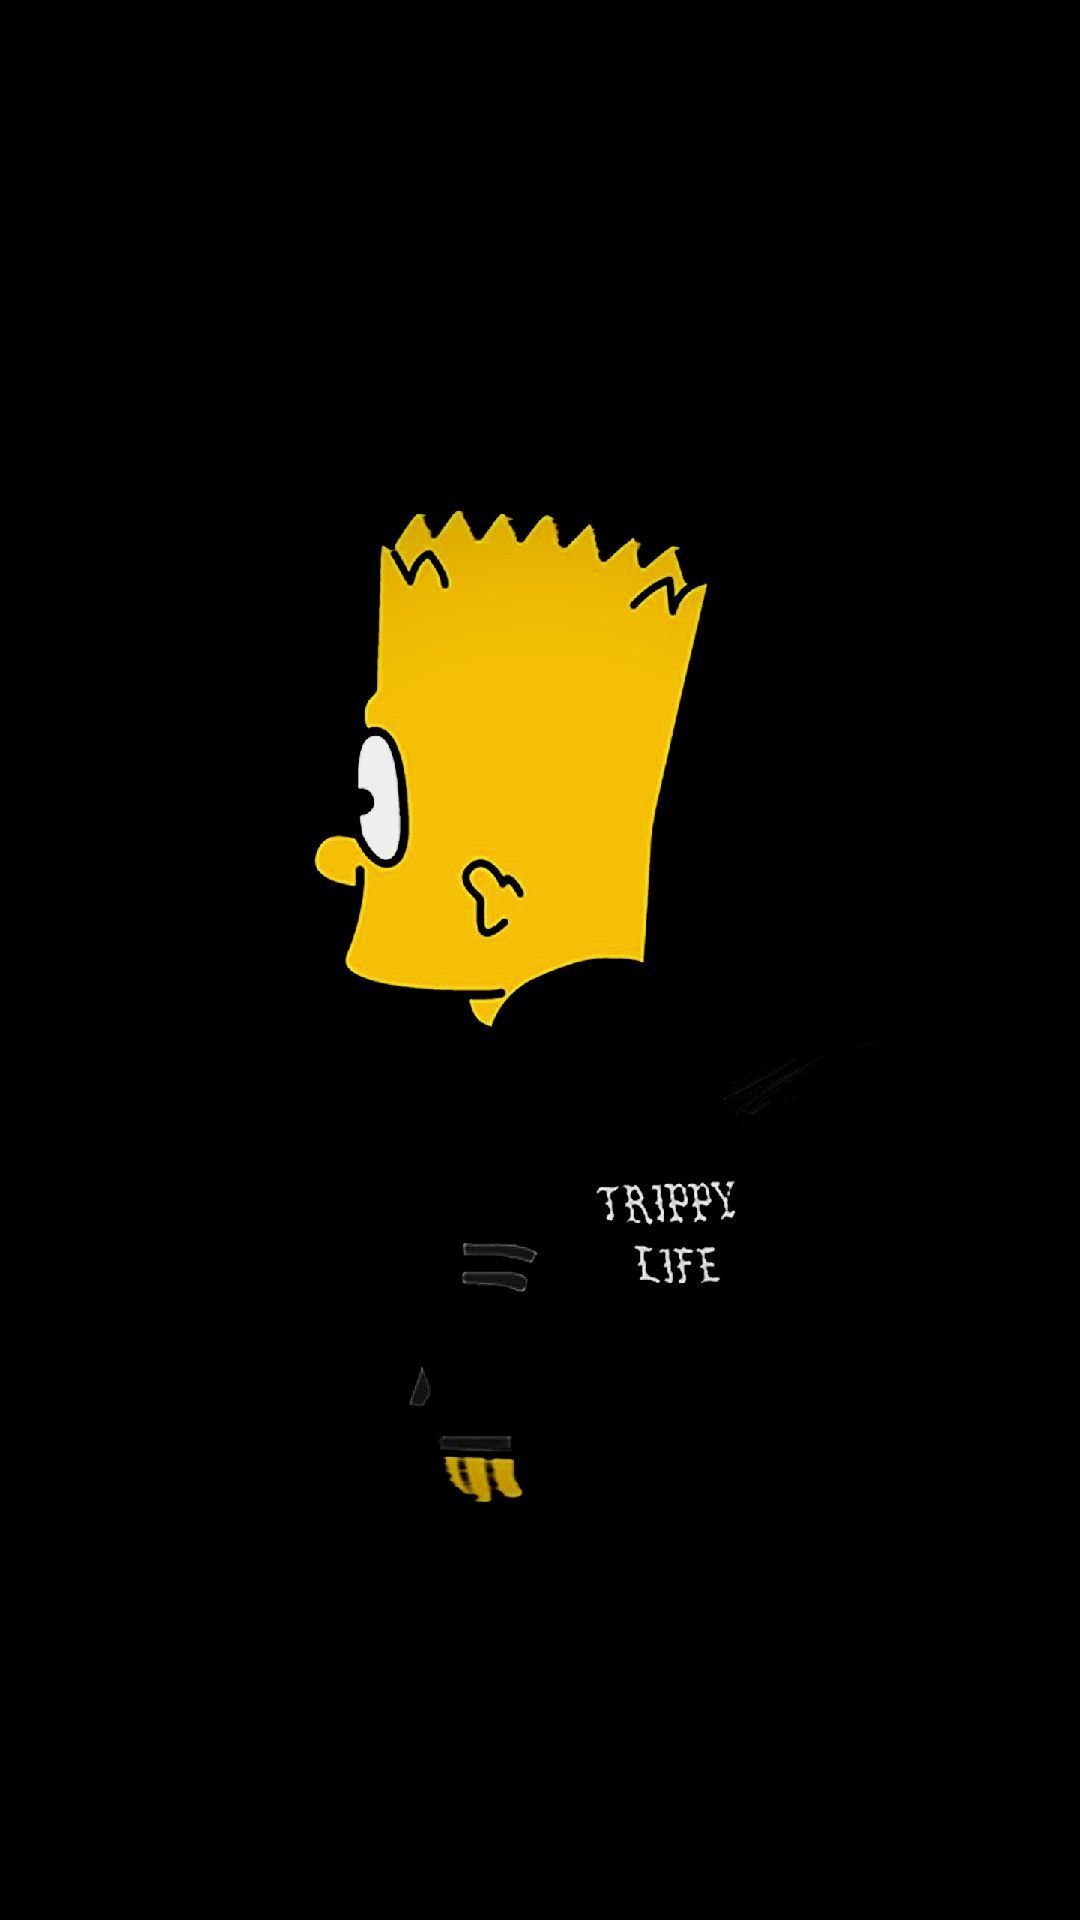 Những hình nền Simpson buồn đáng yêu sẽ làm say lòng các fan yêu thích bộ phim hoạt hình này. Hãy tìm hiểu ngay để thưởng thức bộ sưu tập hình nền Simpson buồn đáng yêu và đầy ý nghĩa.